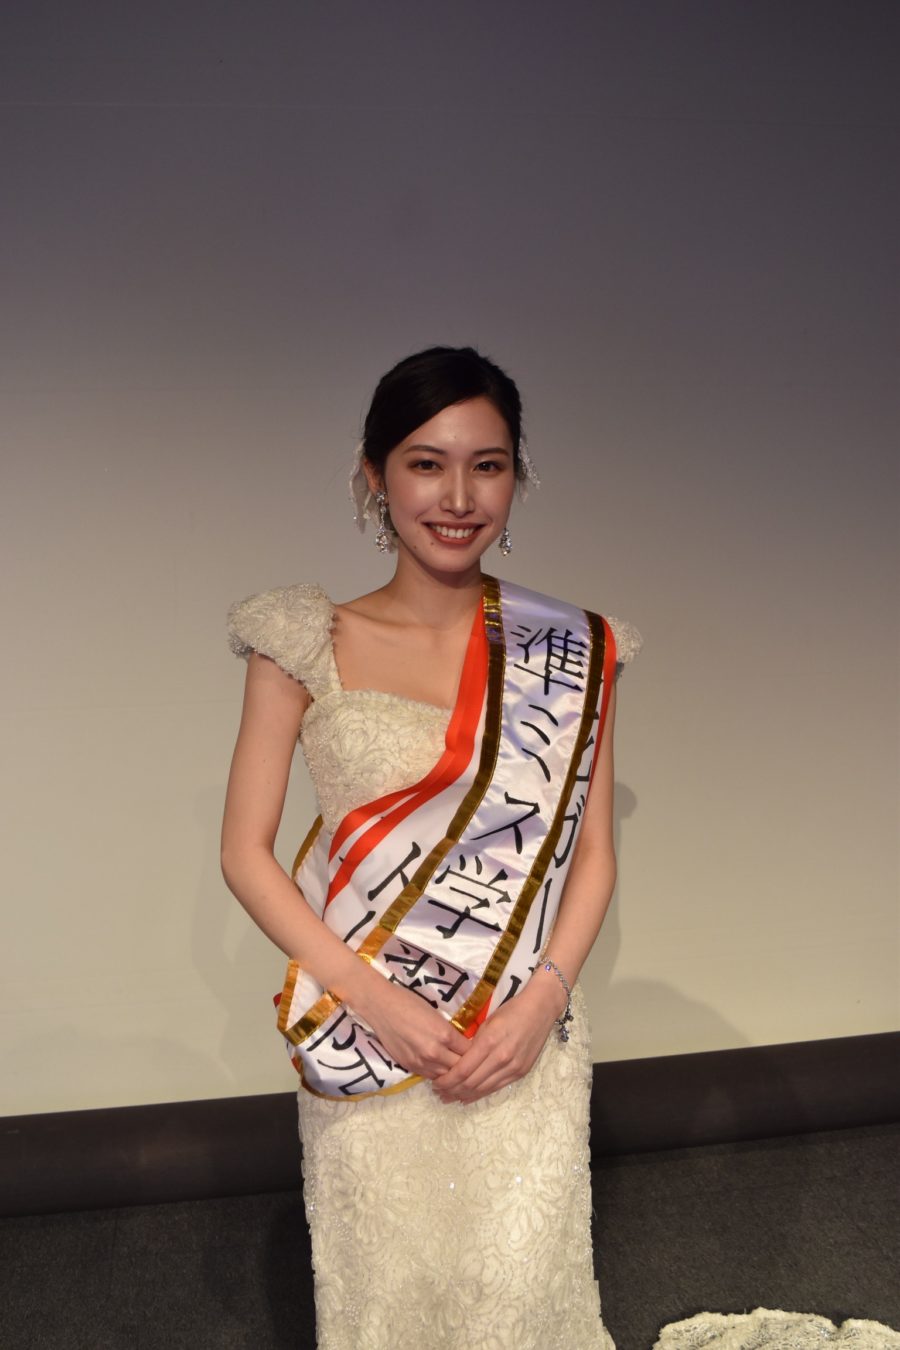 梨花和服がミス学習院コンテスト2020に協賛企業として梨花ガールズ賞を準グランプリの糸川菜央様に贈呈致しました。